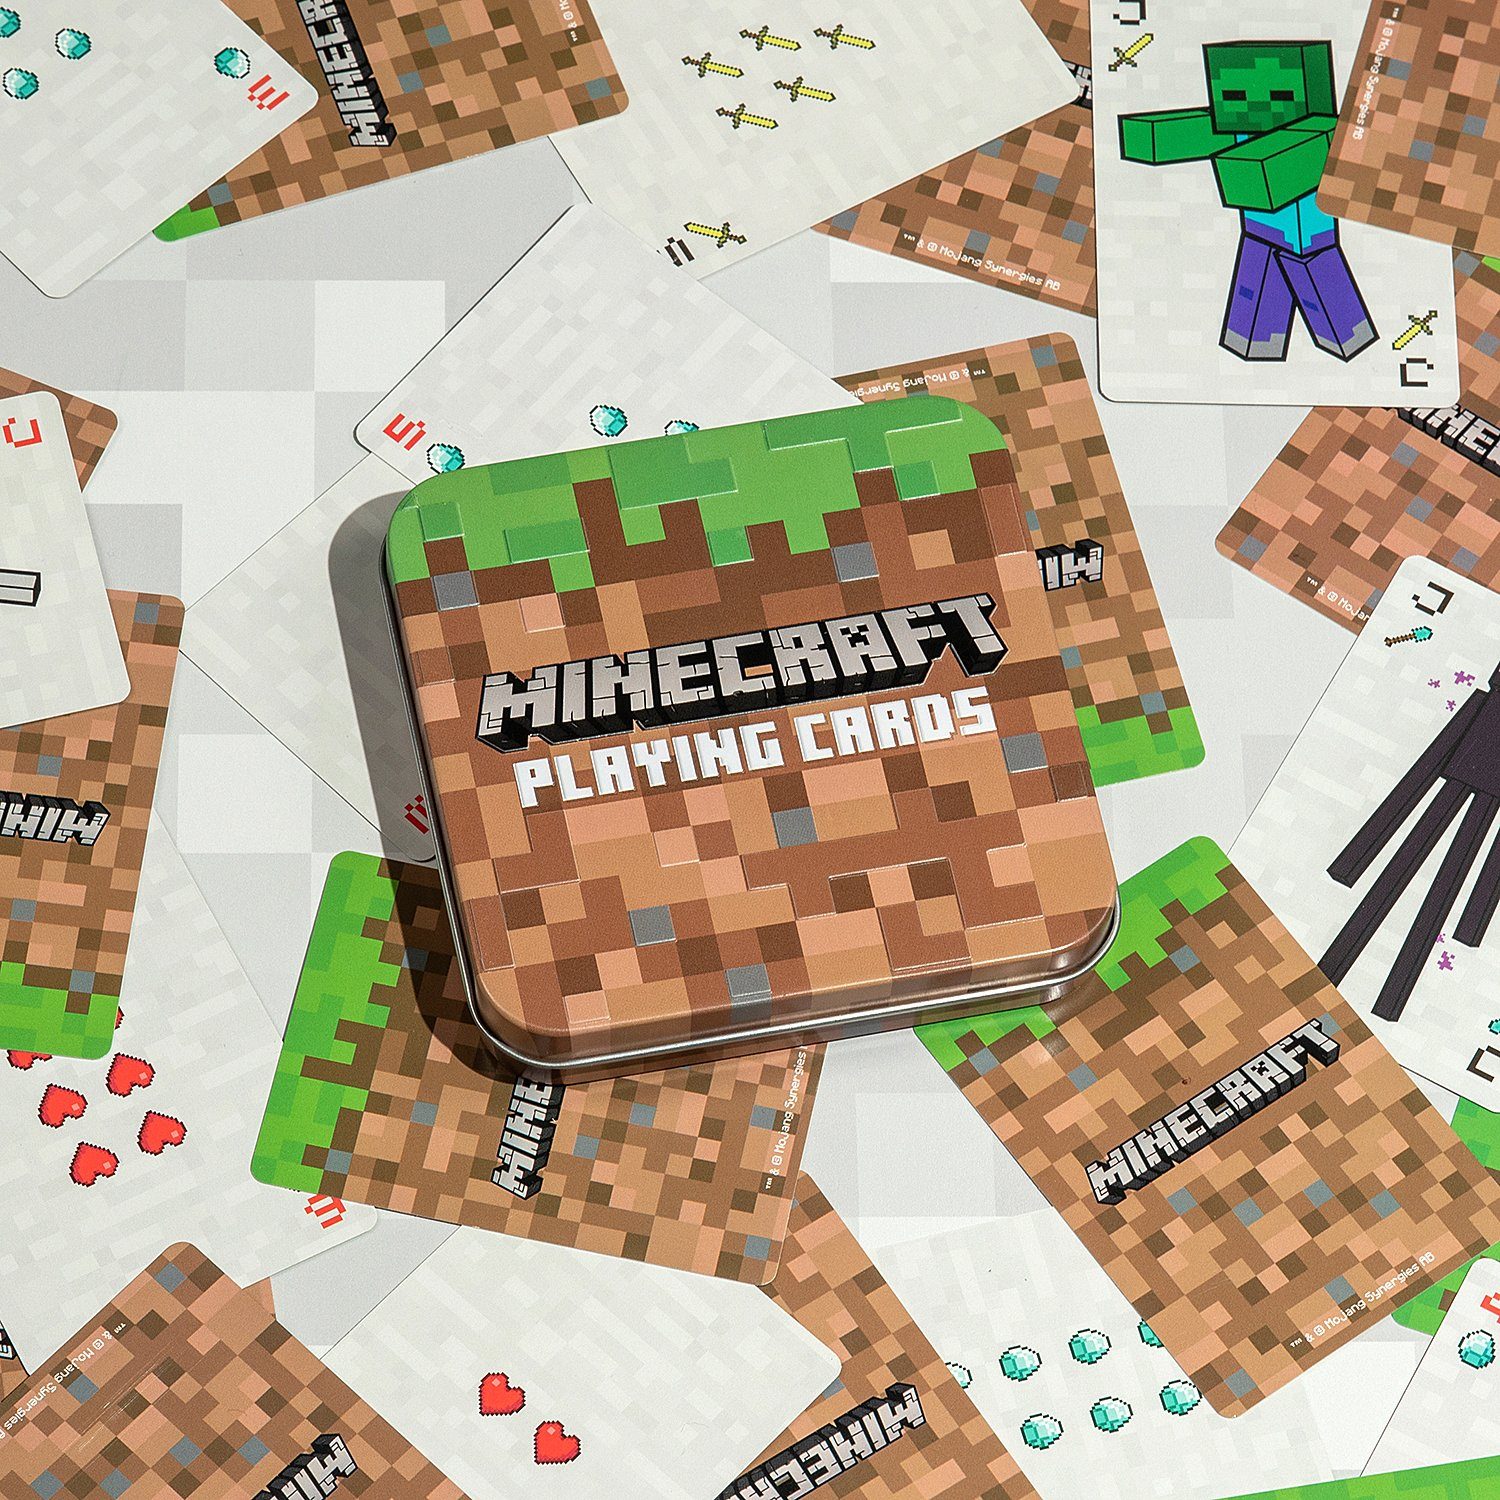 Paladone Spiel, Minecraft Kartenspiel Playing Cards